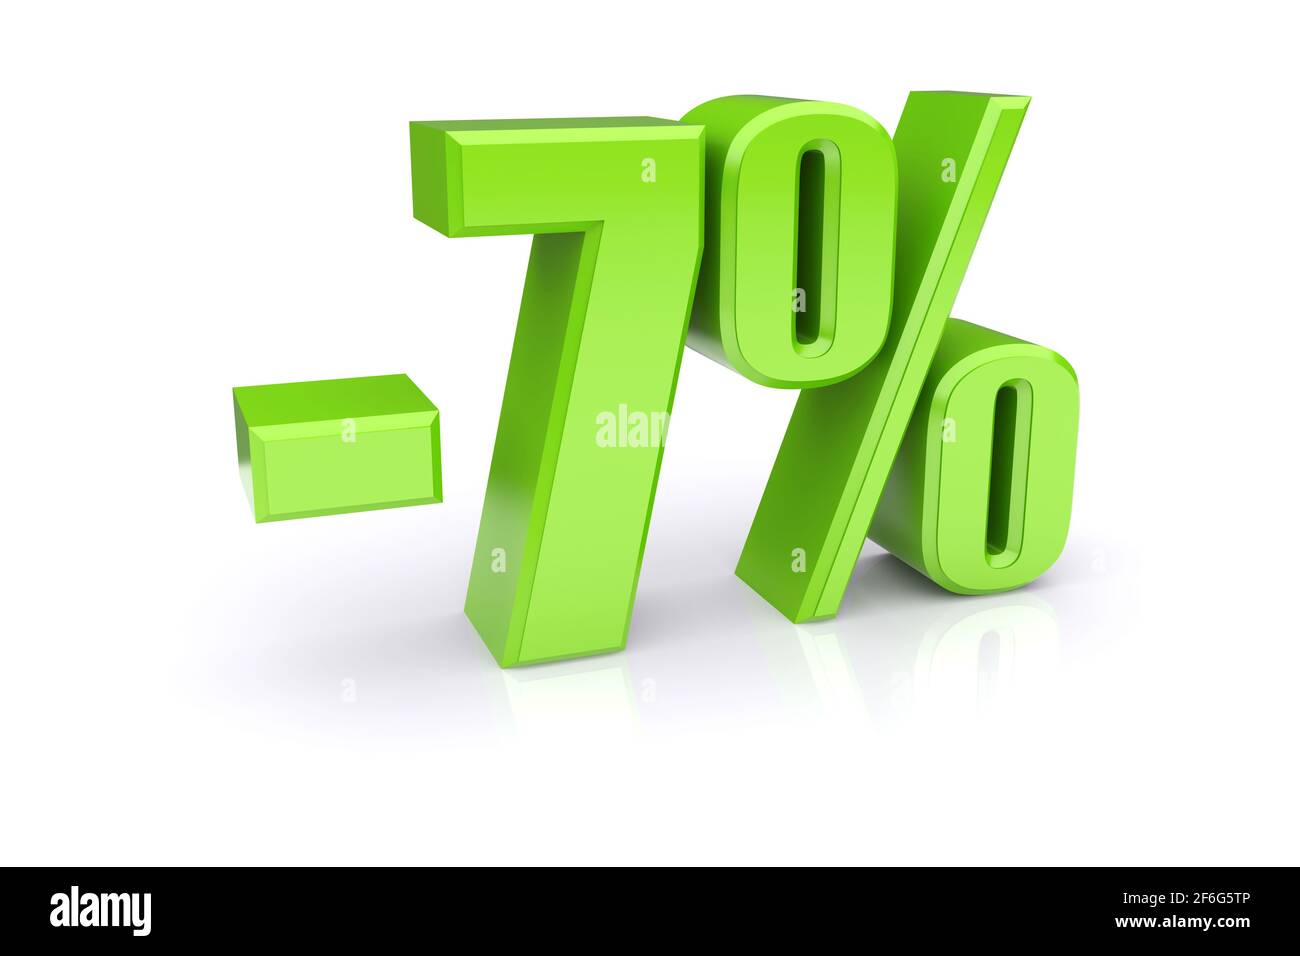 Icona verde del tasso percentuale del 7% su sfondo bianco. immagine 3d rappresentata Foto Stock